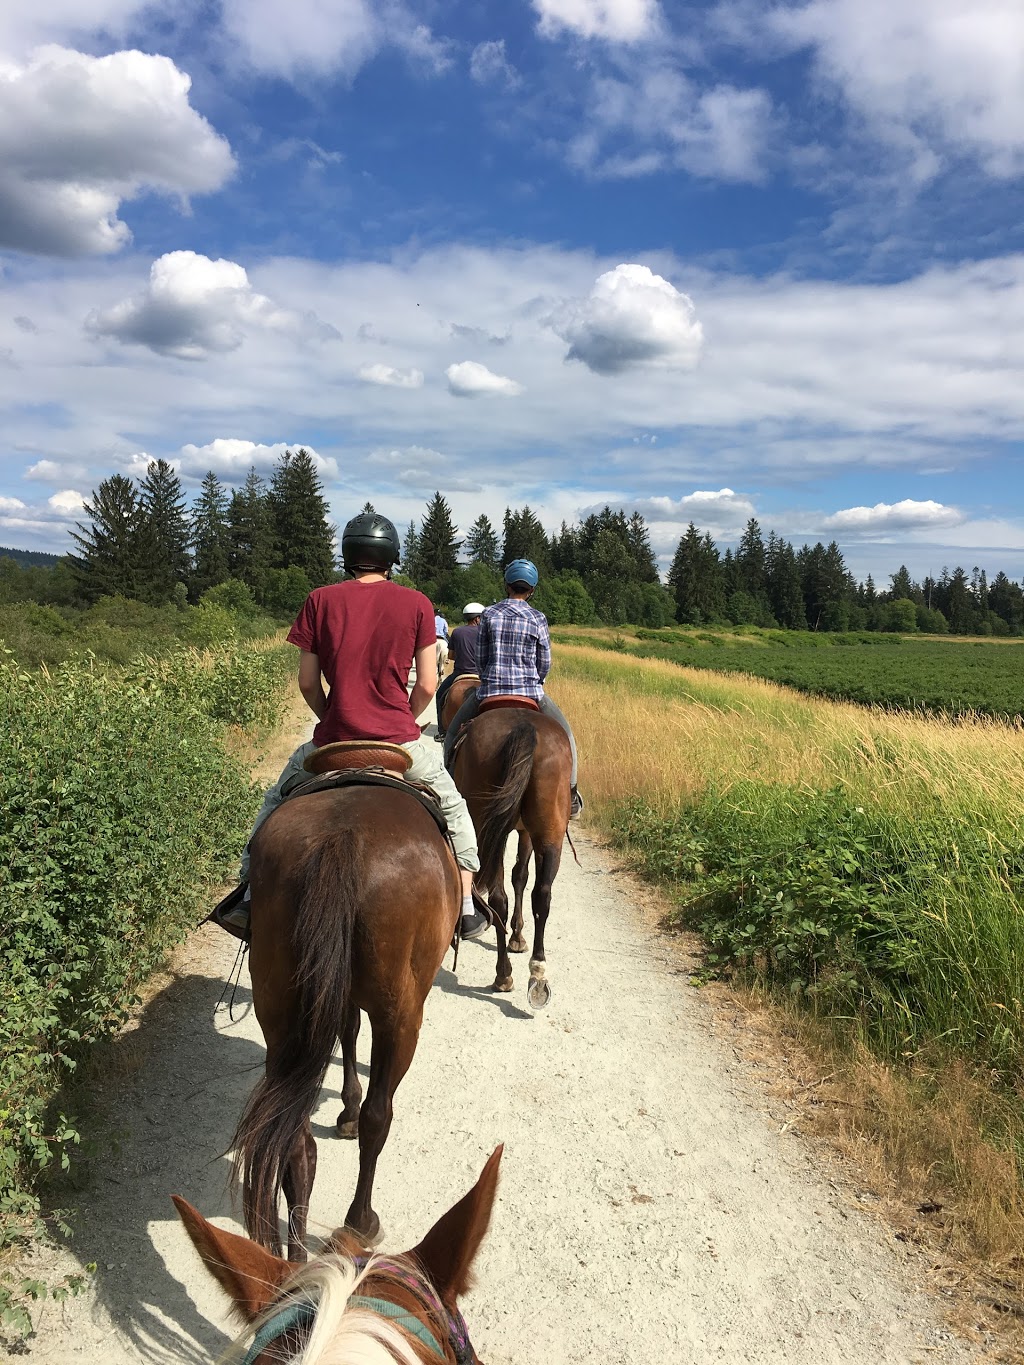 Leghorn Ranch Trail Rides & Hay Sales | 20254 Old Dewdney Trunk Rd, Pitt Meadows, BC V3Y 1Z1, Canada | Phone: (778) 886-1343